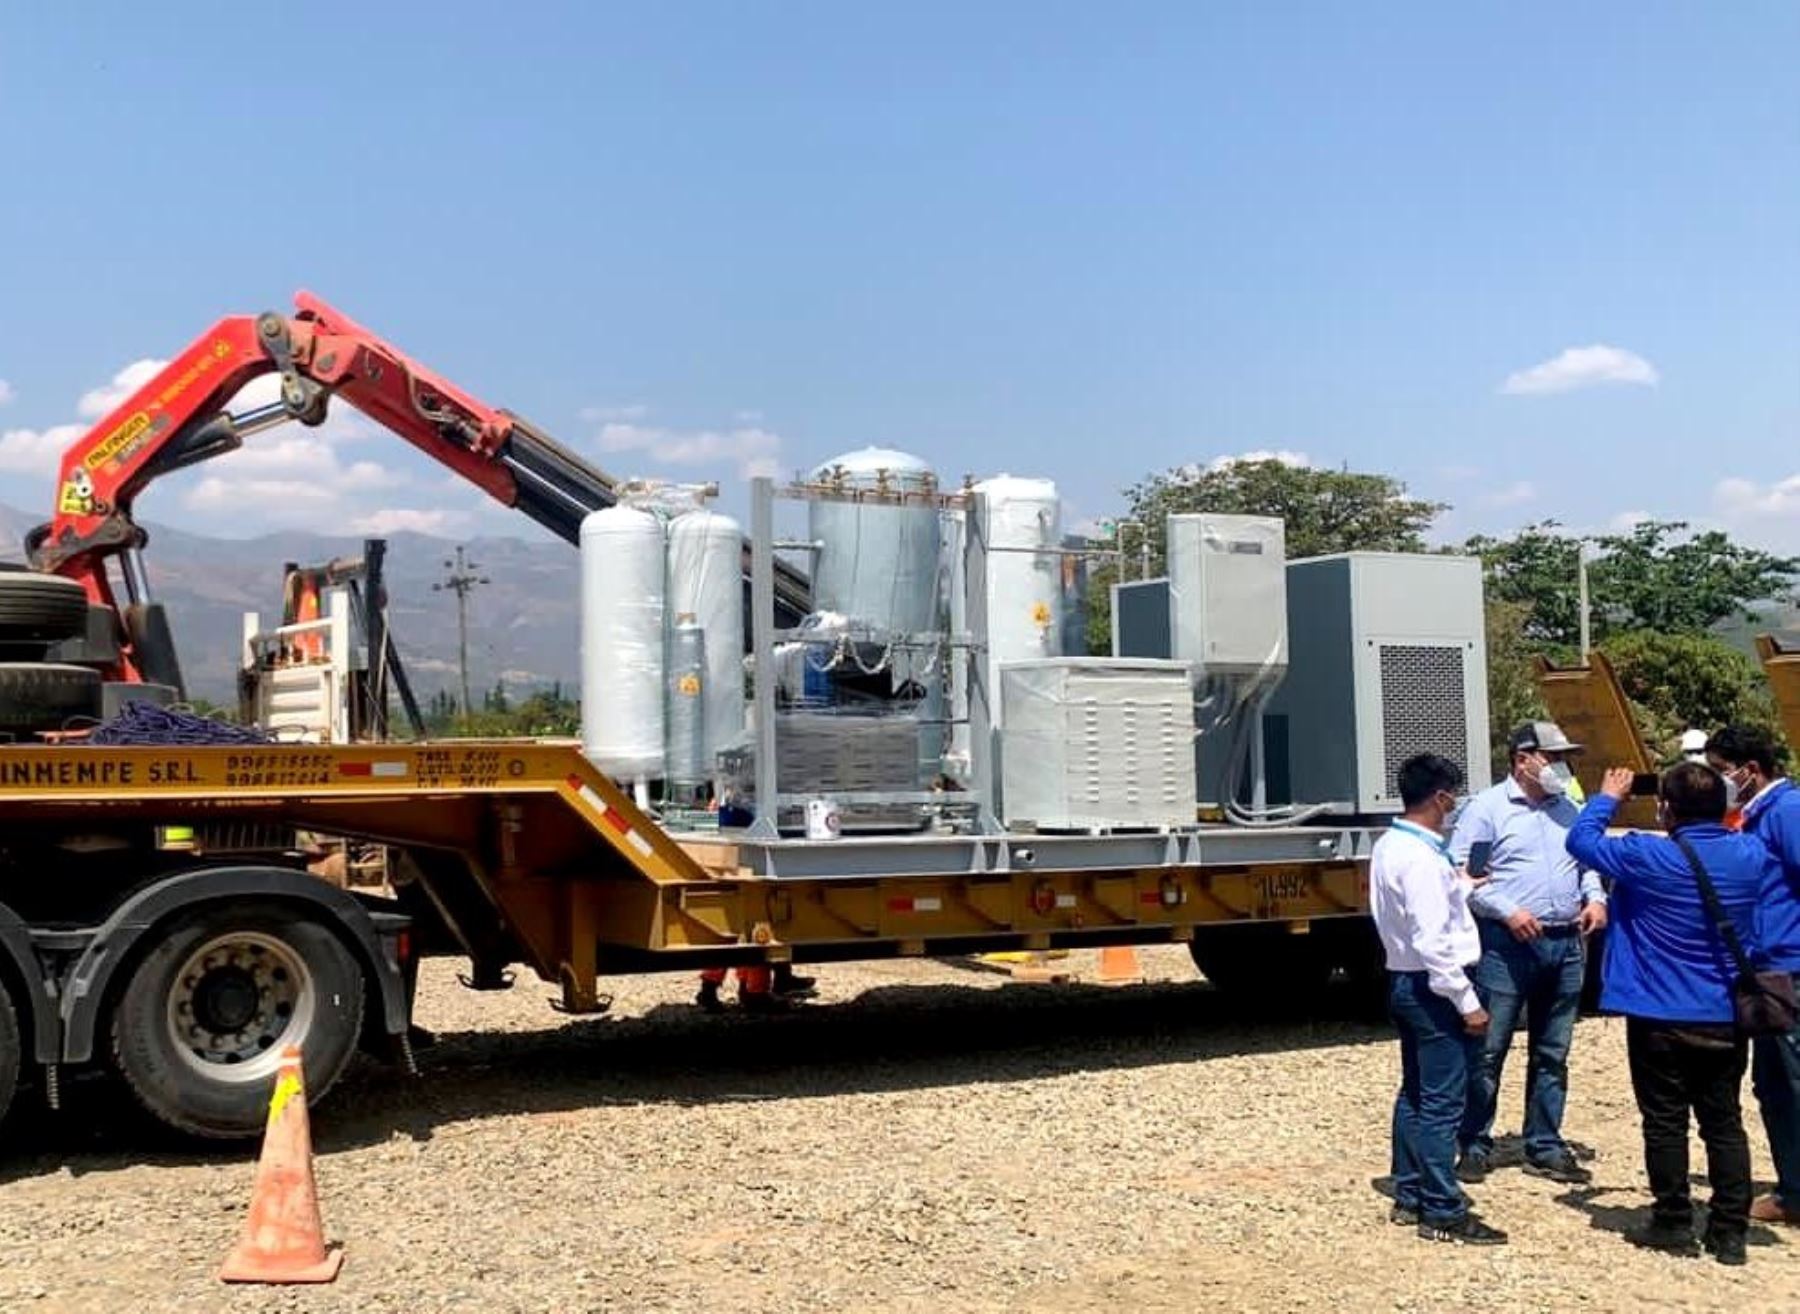 Arriba nueva planta de oxígeno a la provincia de Cajabamba, región Cajamarca, que permitira reforzar la atención a pacientes covid-19 de dicha jurisdicción. El equipo fue donado por empresa minera.